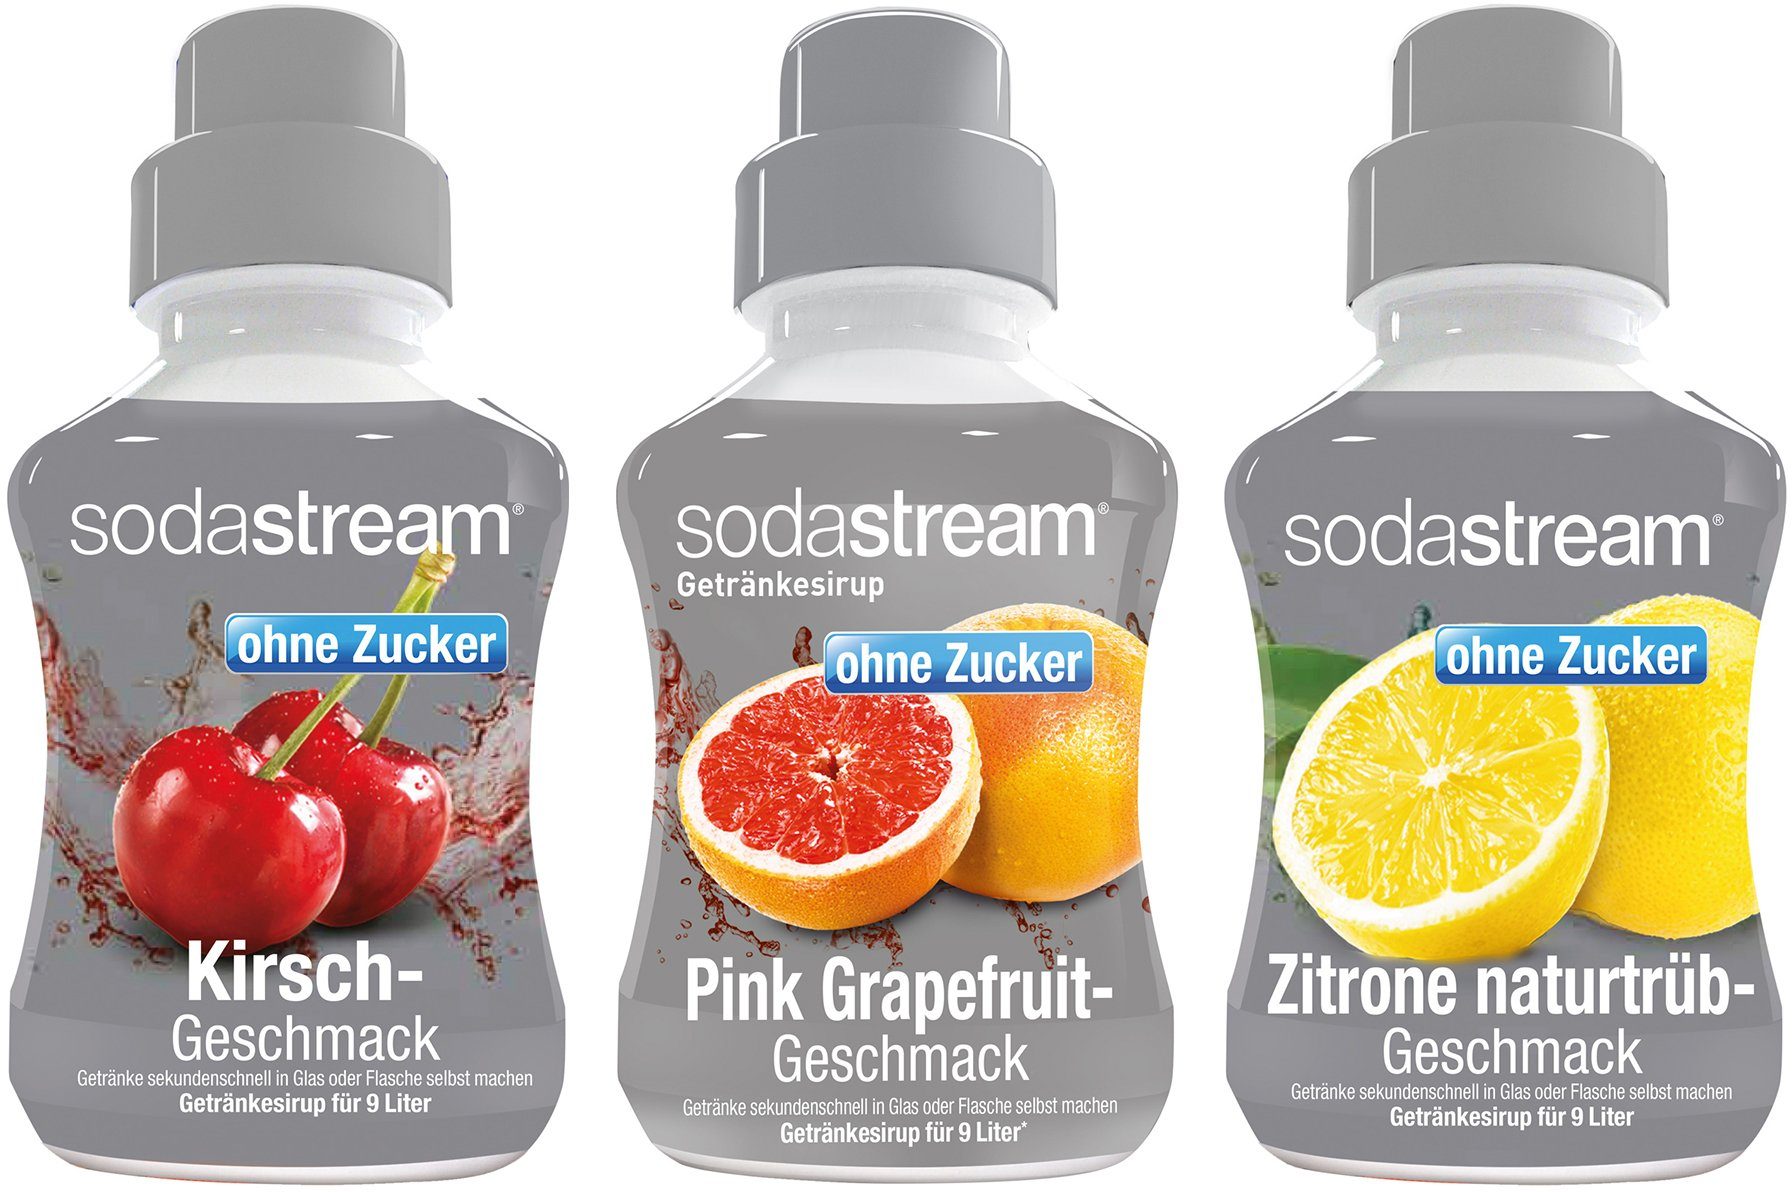 SodaStream Getränke-Sirup, 3 Stück, 1x SST Kirsche ohne Zucker, 1x SST Pink  Grapefruit ohne Zucker und 1x SST-Zitrone-Naturtrüb ohne Zucker  Getränkesirup je 375ml für je 9L Fertiggetränk online kaufen | OTTO